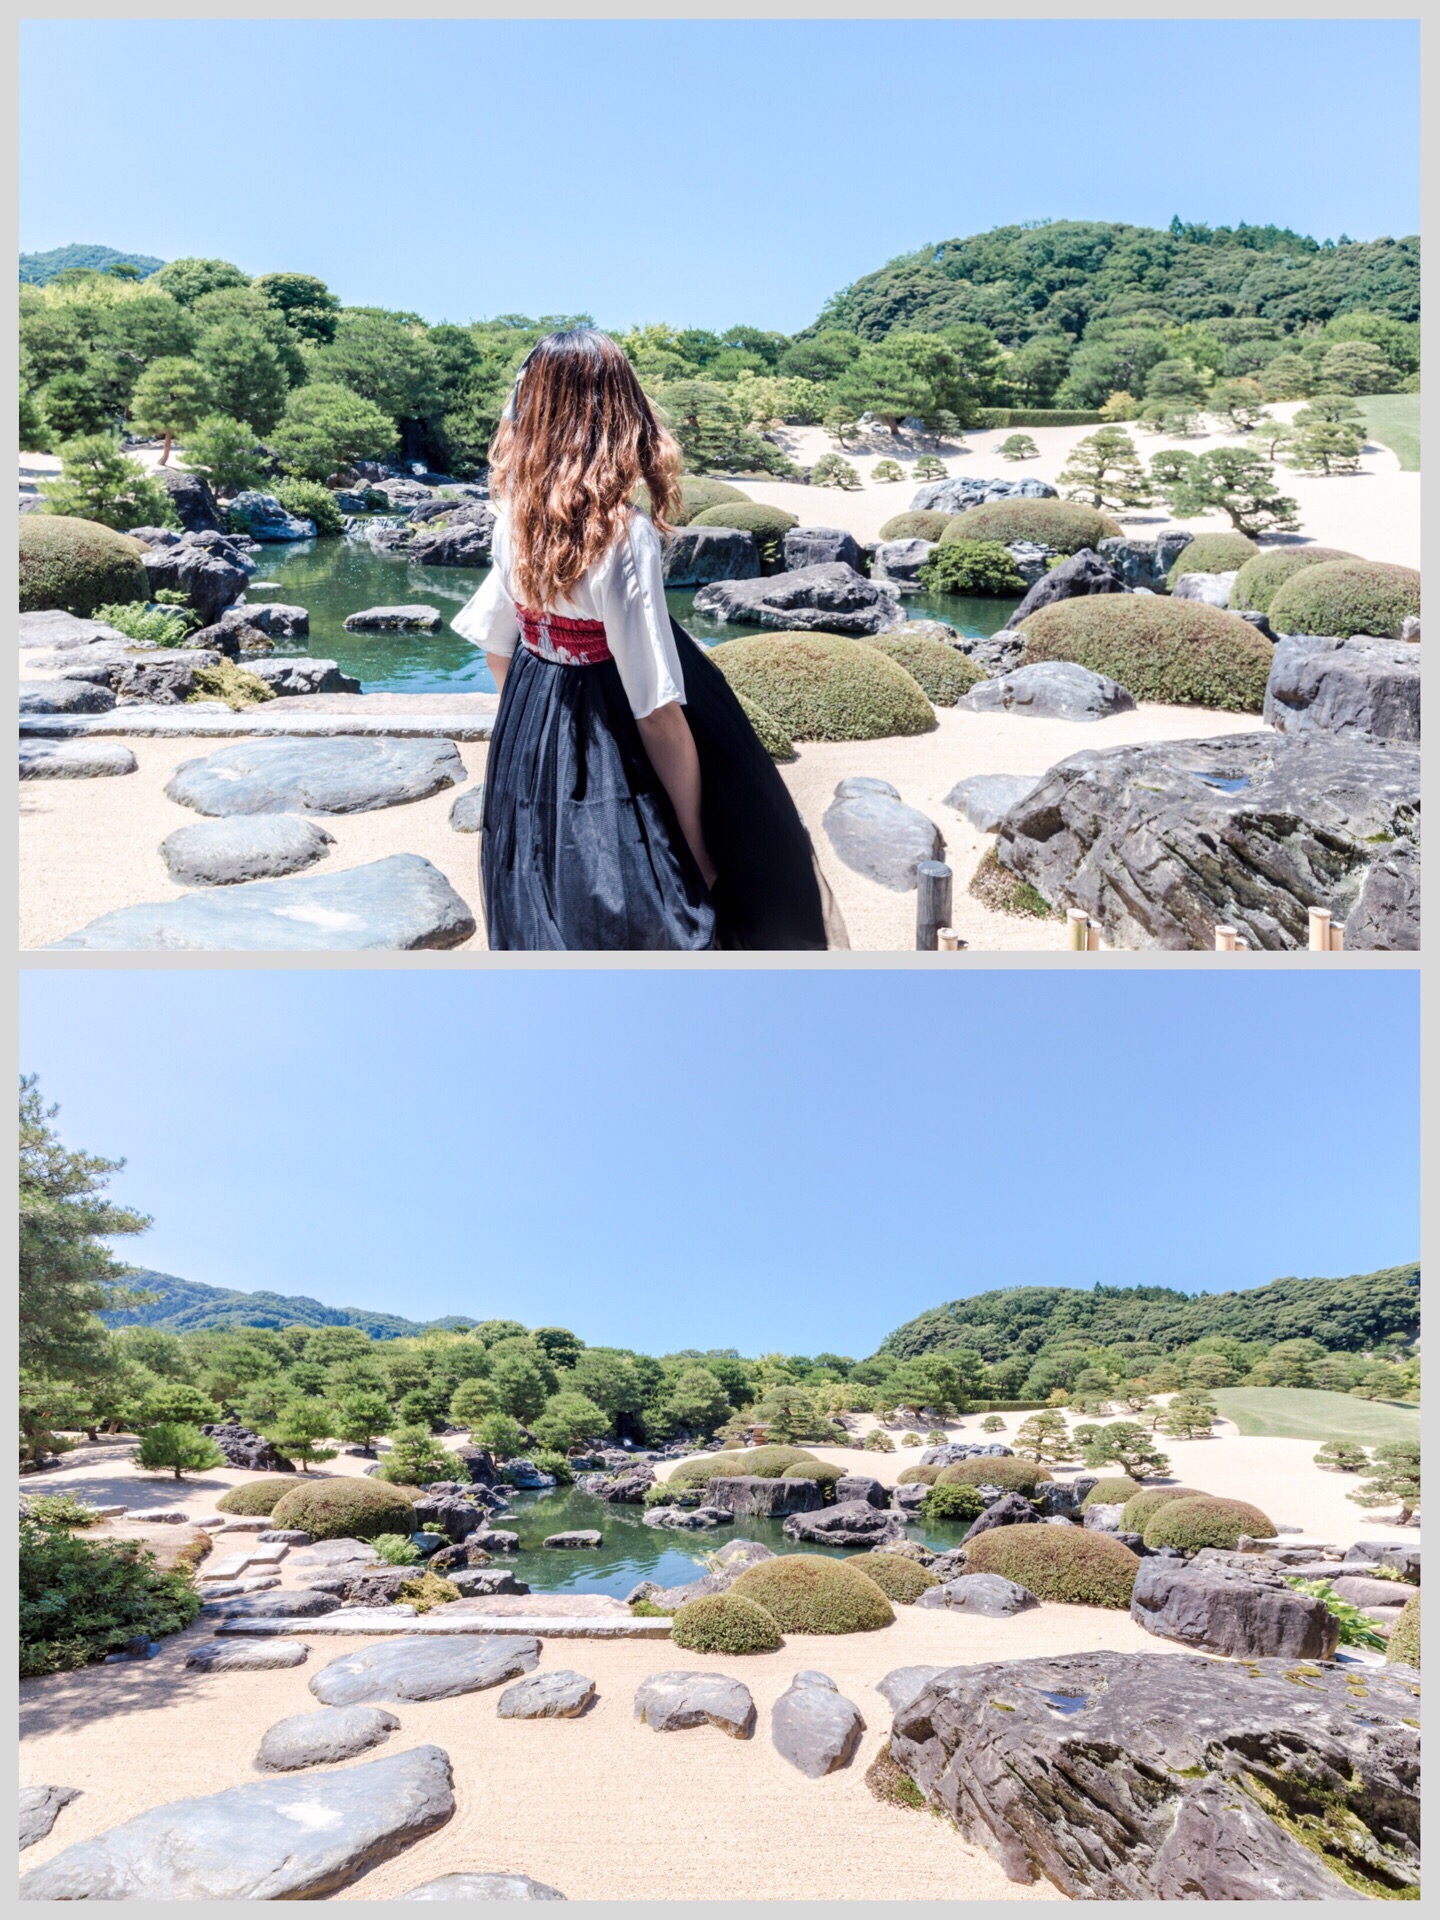 日本最美庭园👉🏻不容错过的安来足立美术馆❤️ 说到日本的庭园，这个连续16年被评为“日本第一庭院”的